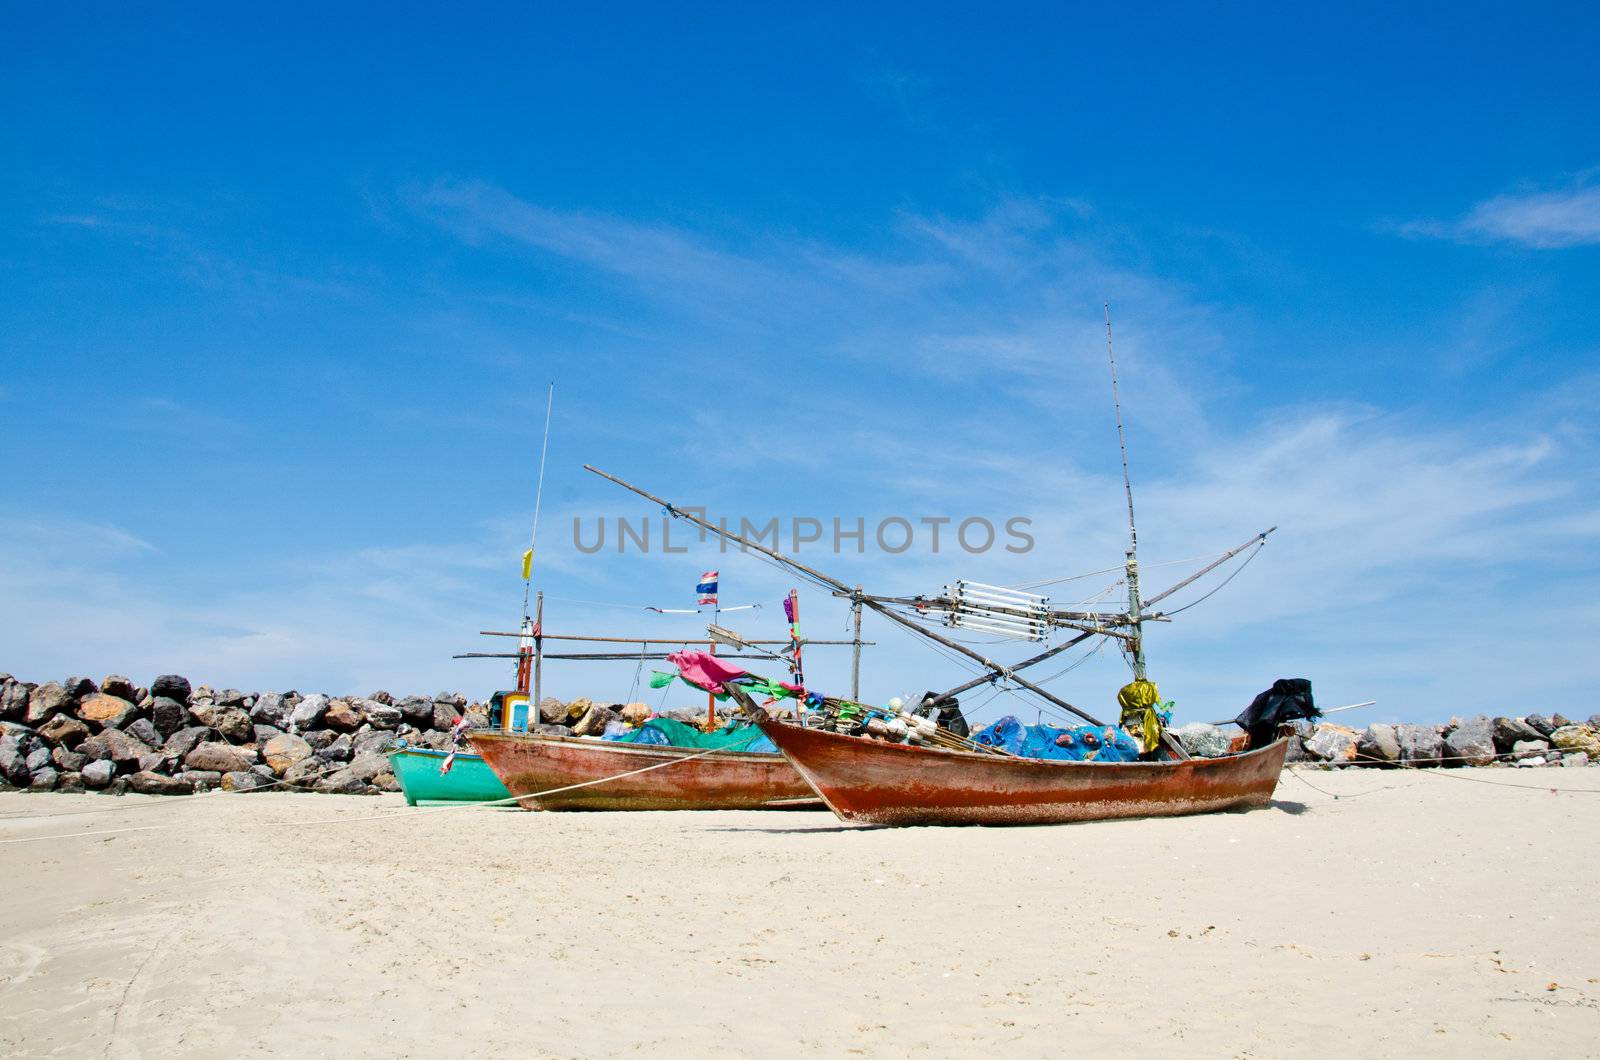 Coastal fishing boats waiting at the water to catch fish. Hua Hin, Thailand.